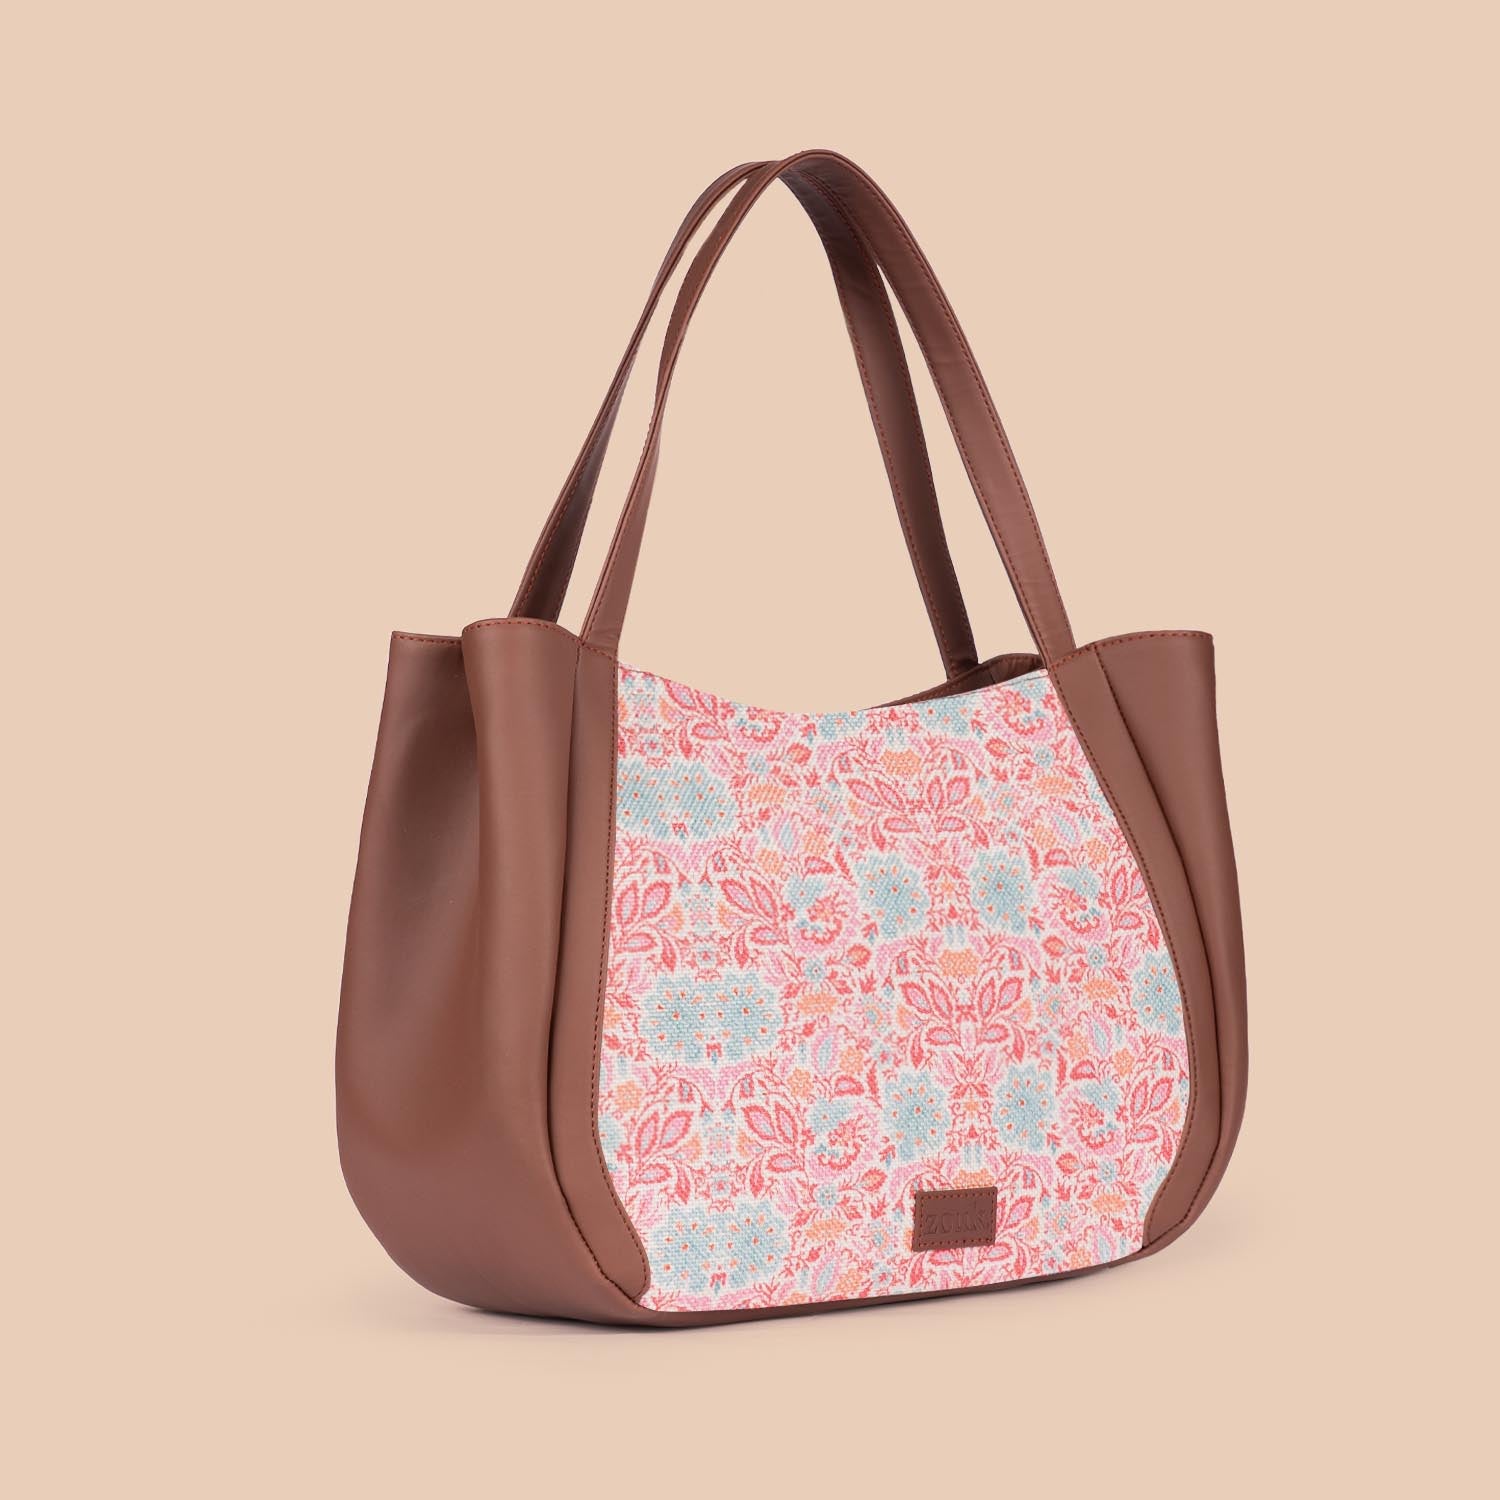 Mangalore Blossoms Luna Handbag